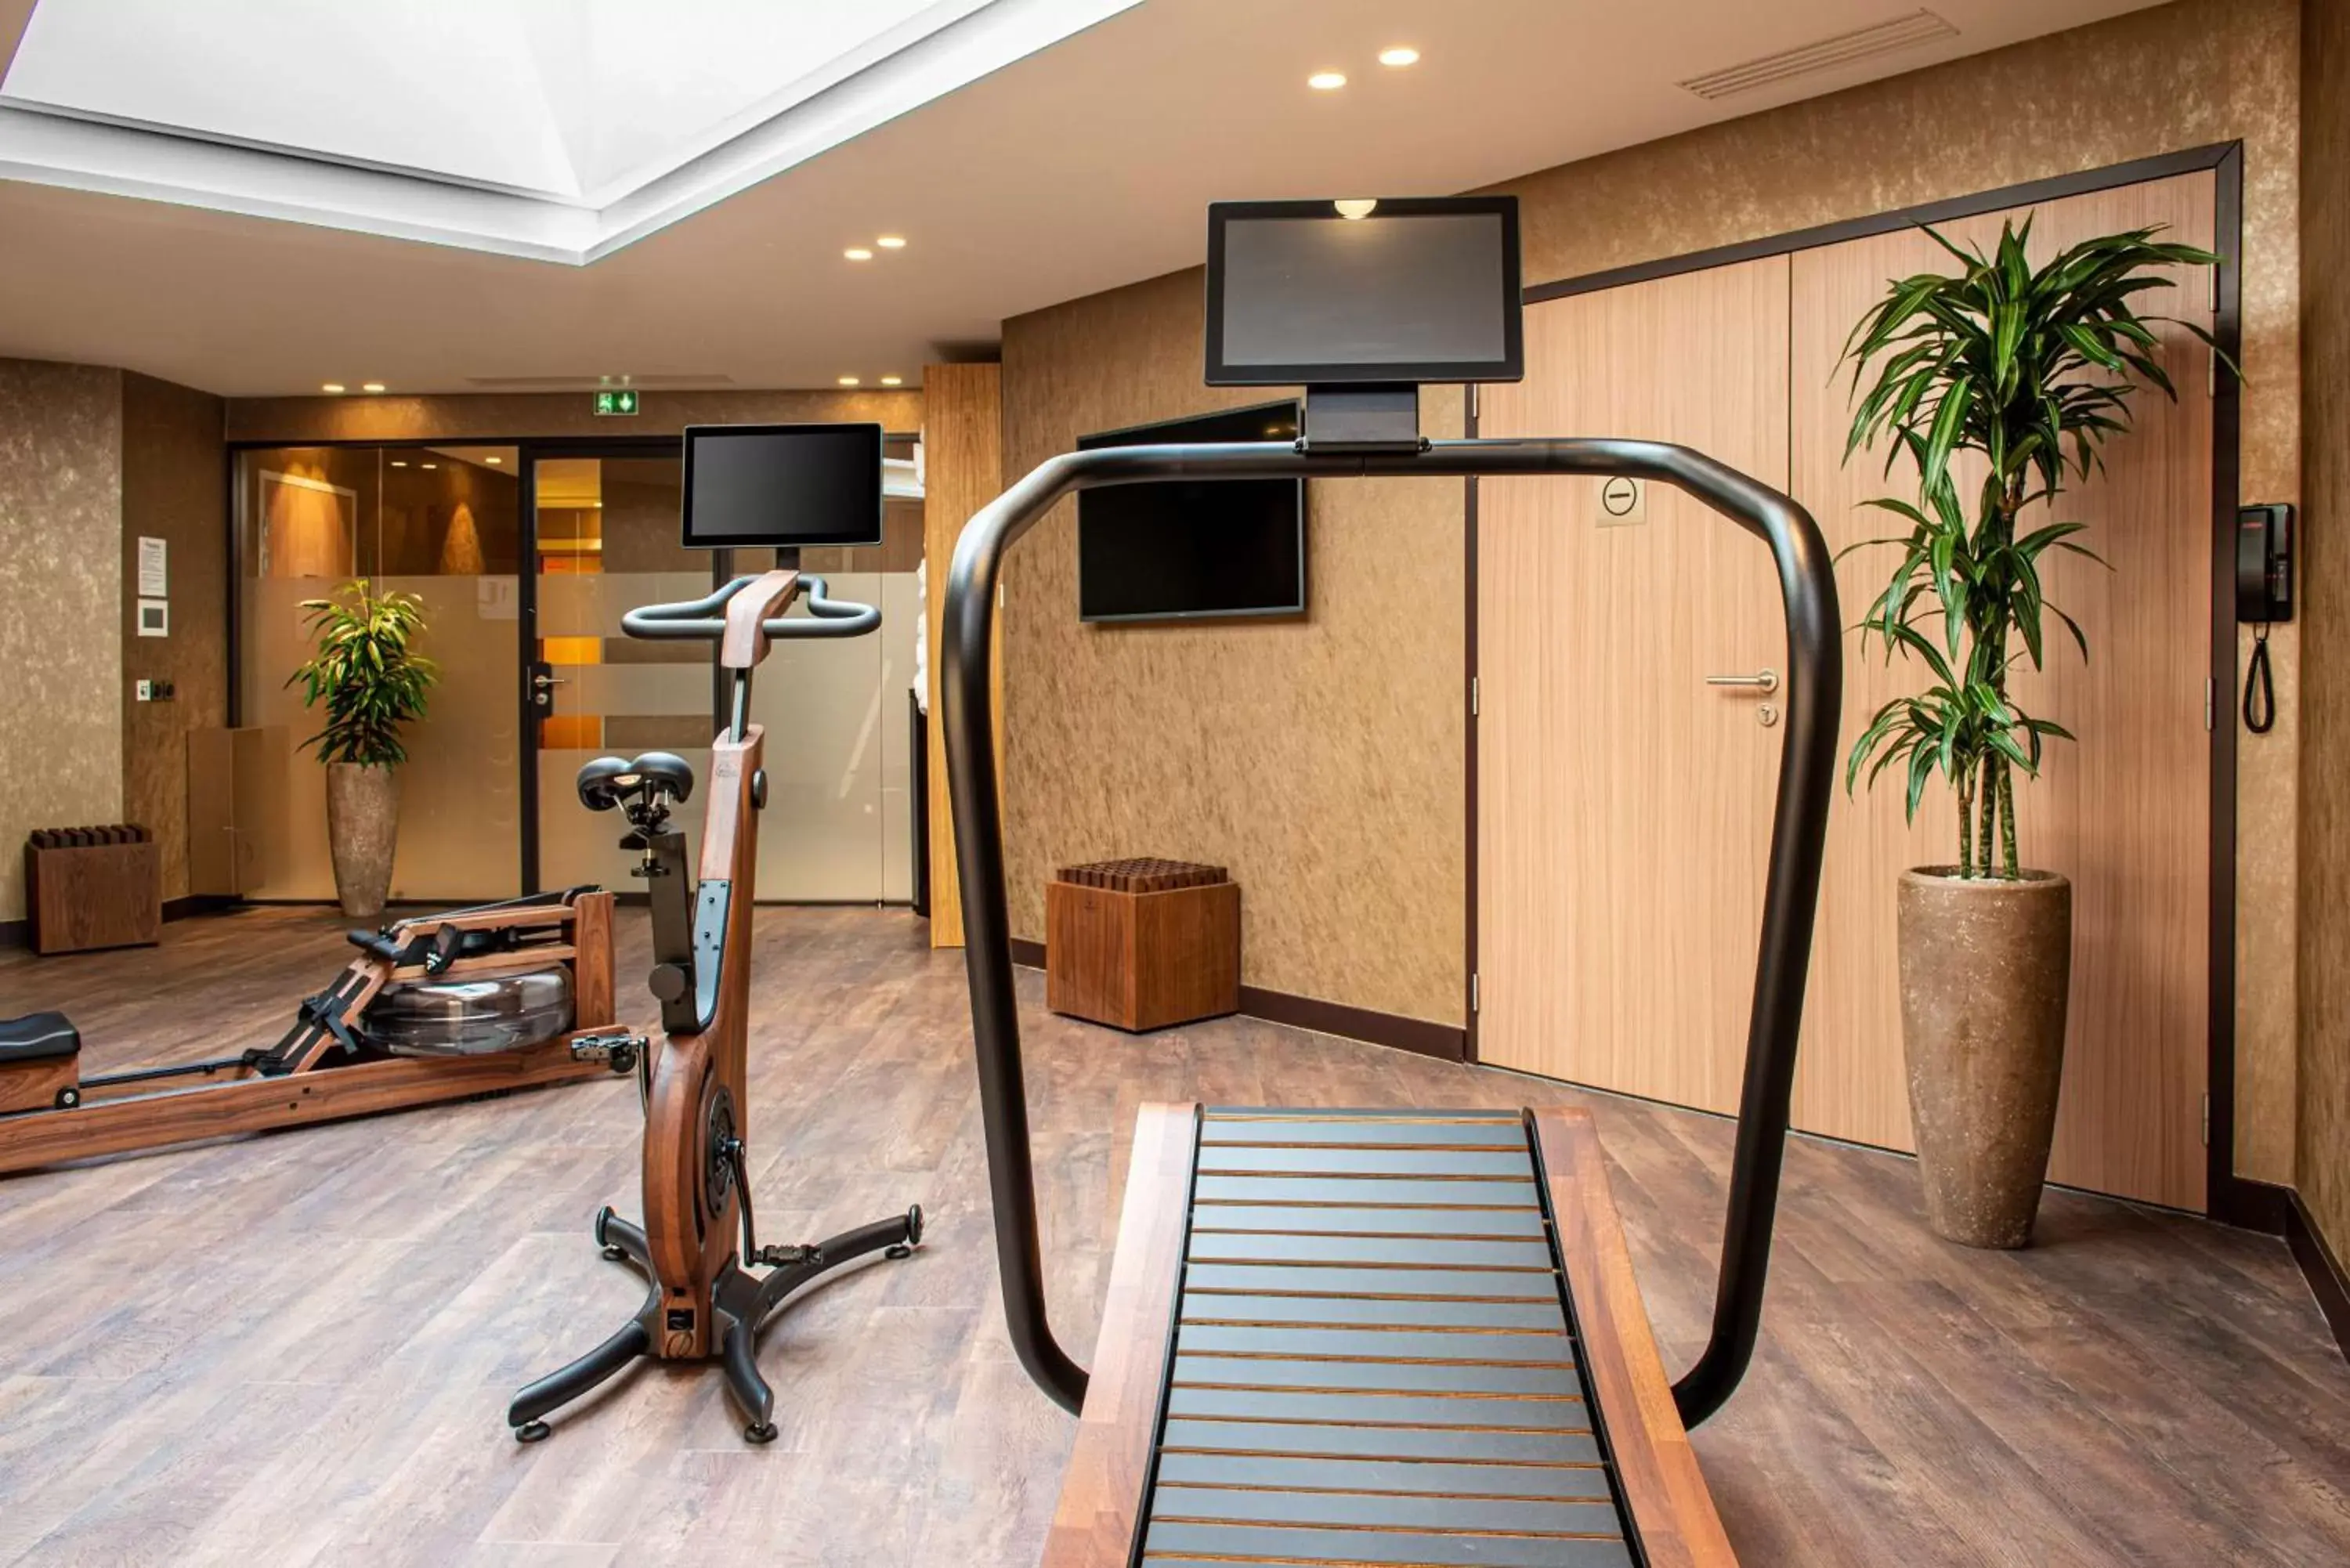 Fitness centre/facilities, Fitness Center/Facilities in Radisson Blu Hotel, Rouen Centre